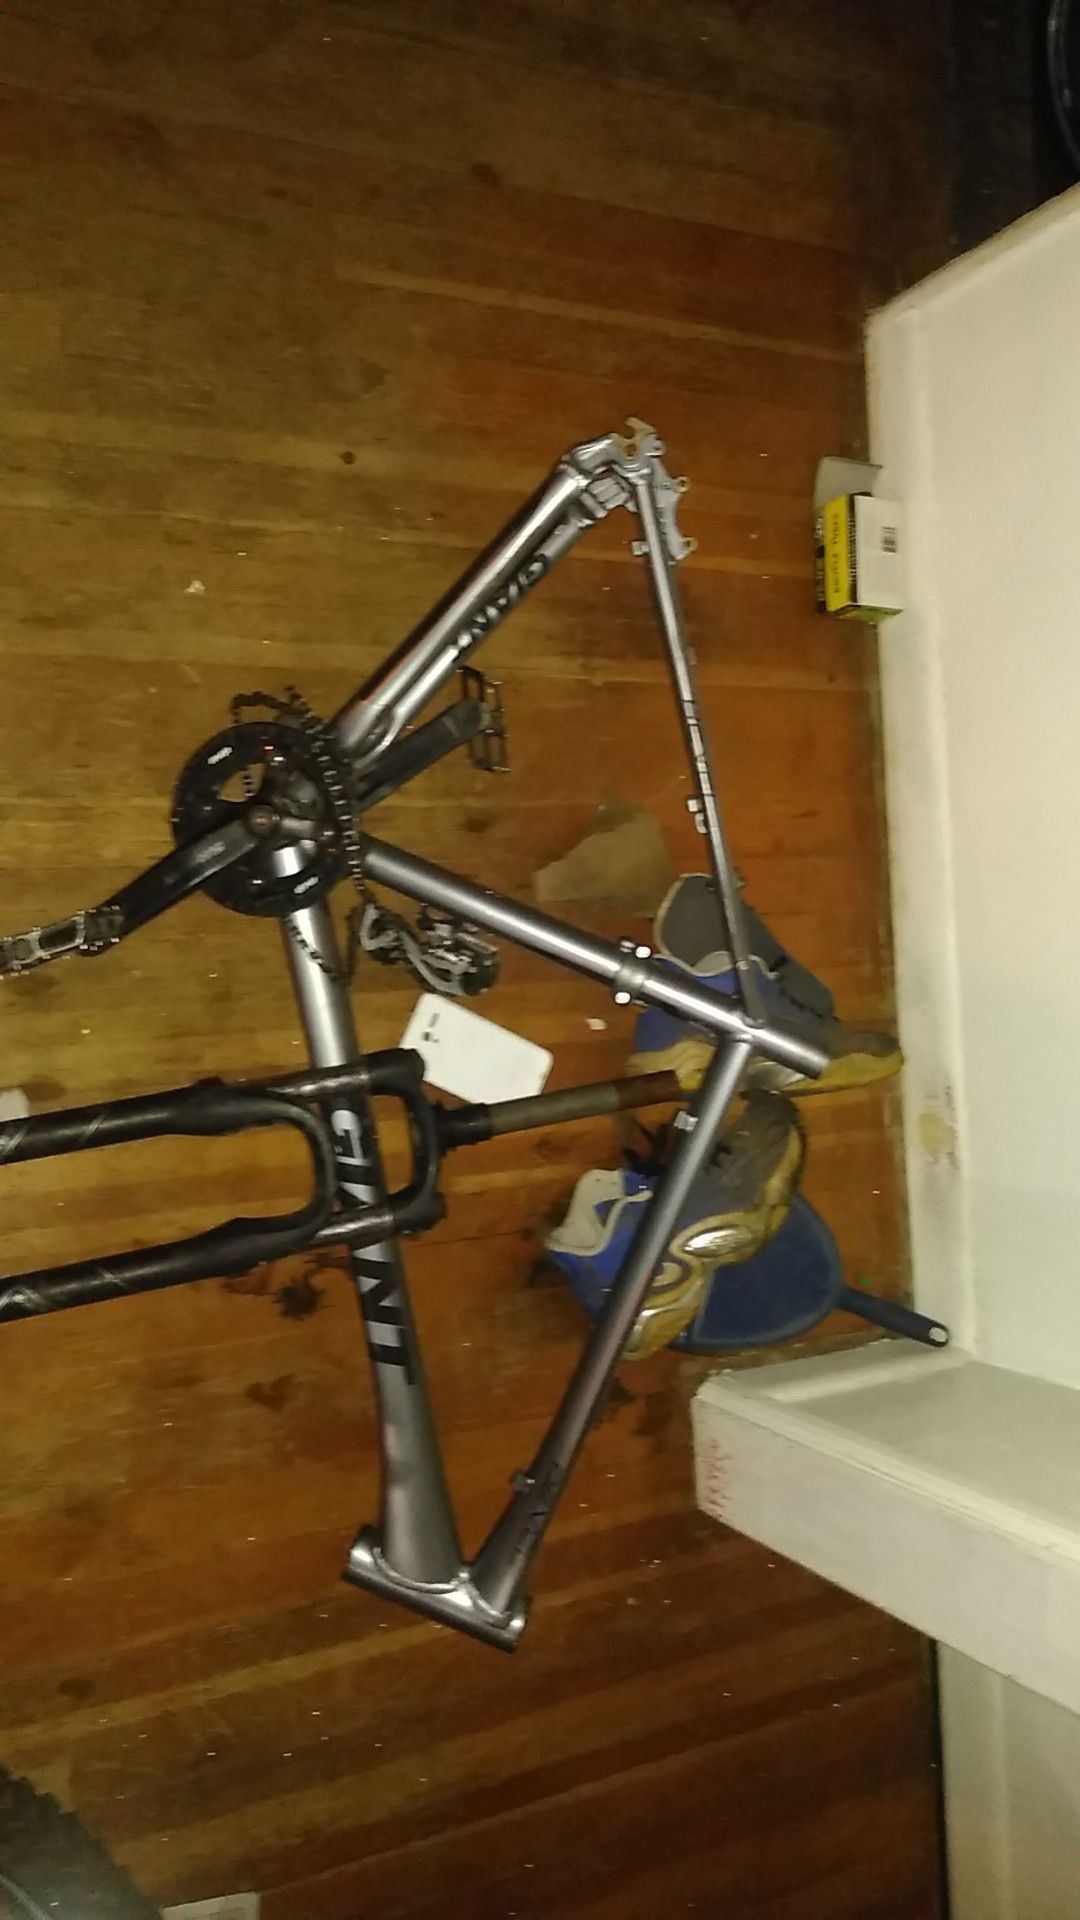 Giant bike frame